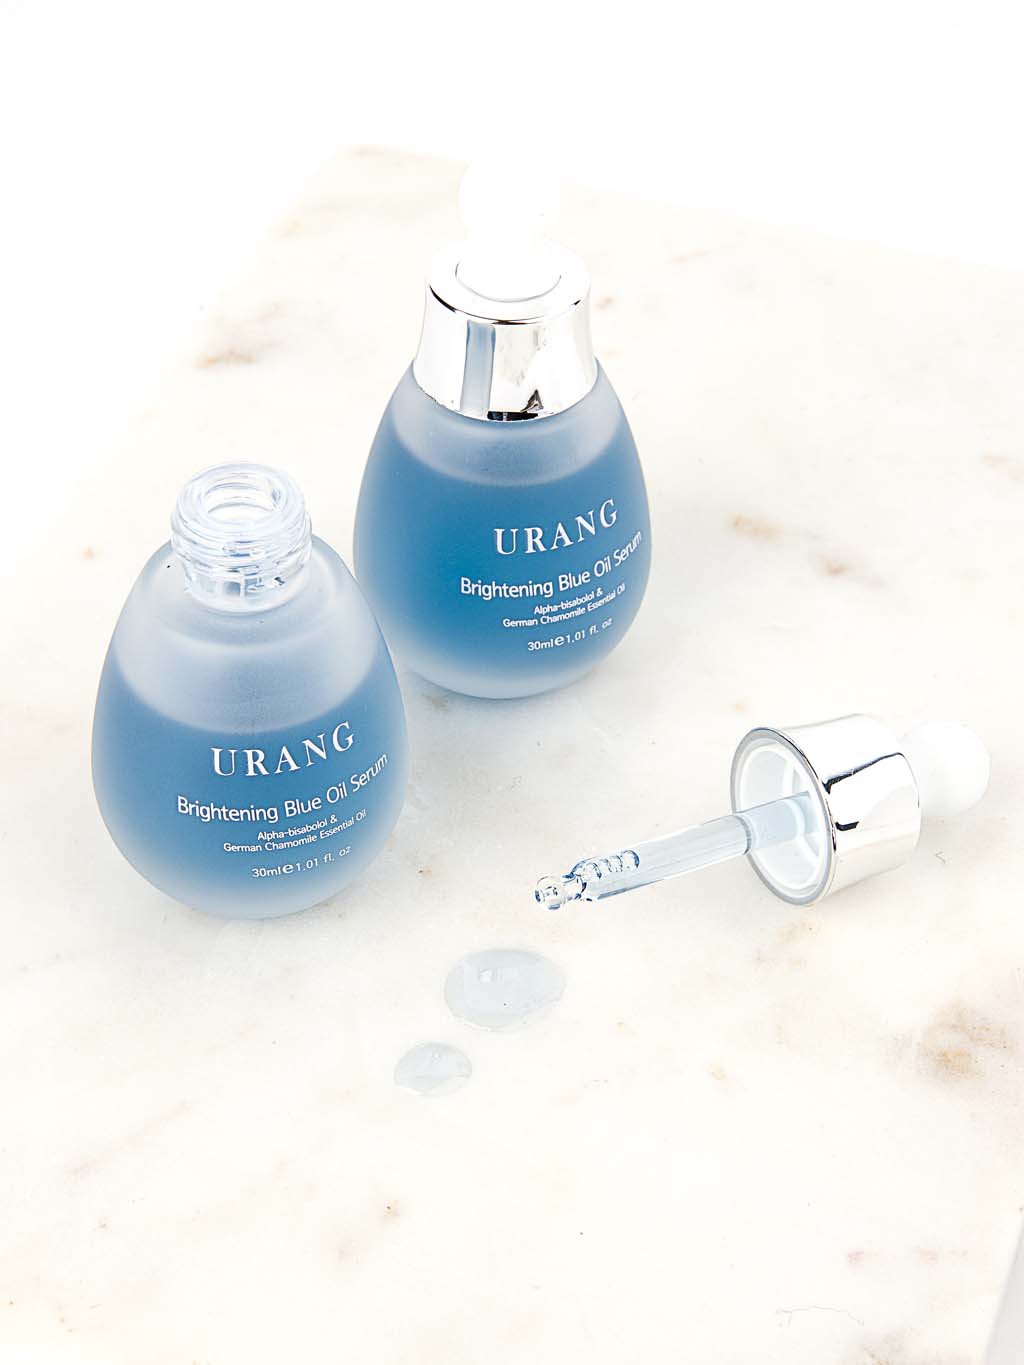 Texture de Brightening Blue Oil Serum de la marque coréenne URANG est apprécié pour ses effets éclaircissants, hydratants et apaisants. Retrouvez une peau éclatante et radieuse grâce à sa formule naturelle à 99,9%, efficace et sans superflu avec seulement 4 ingrédients.